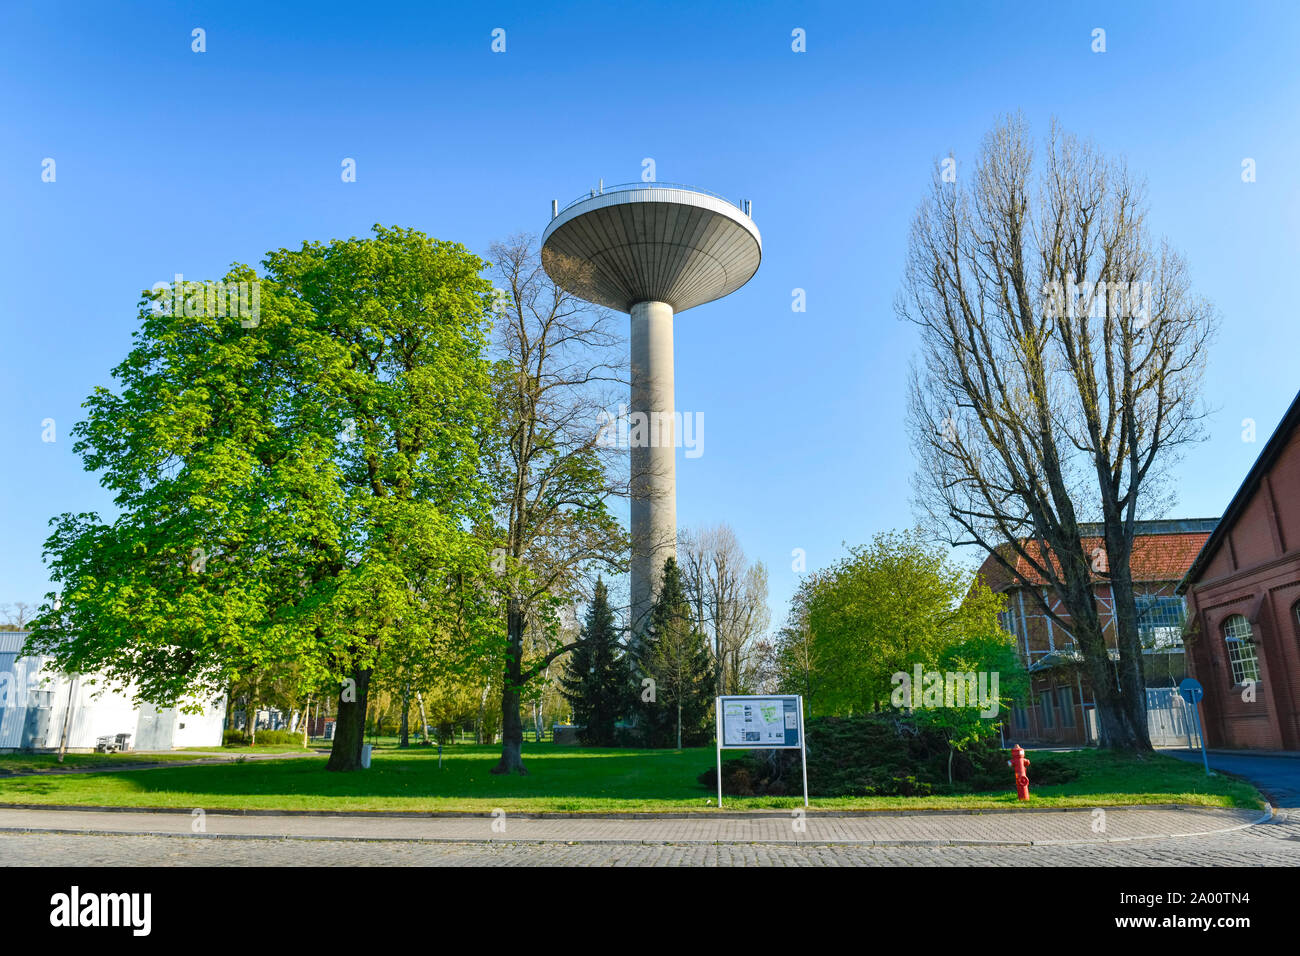 Neuer Wasserturm, Marienpark, Lankwitzer Strasse, Mariendorf, Tempelhof-Schoeneberg, Berlin, Deutschland Banque D'Images